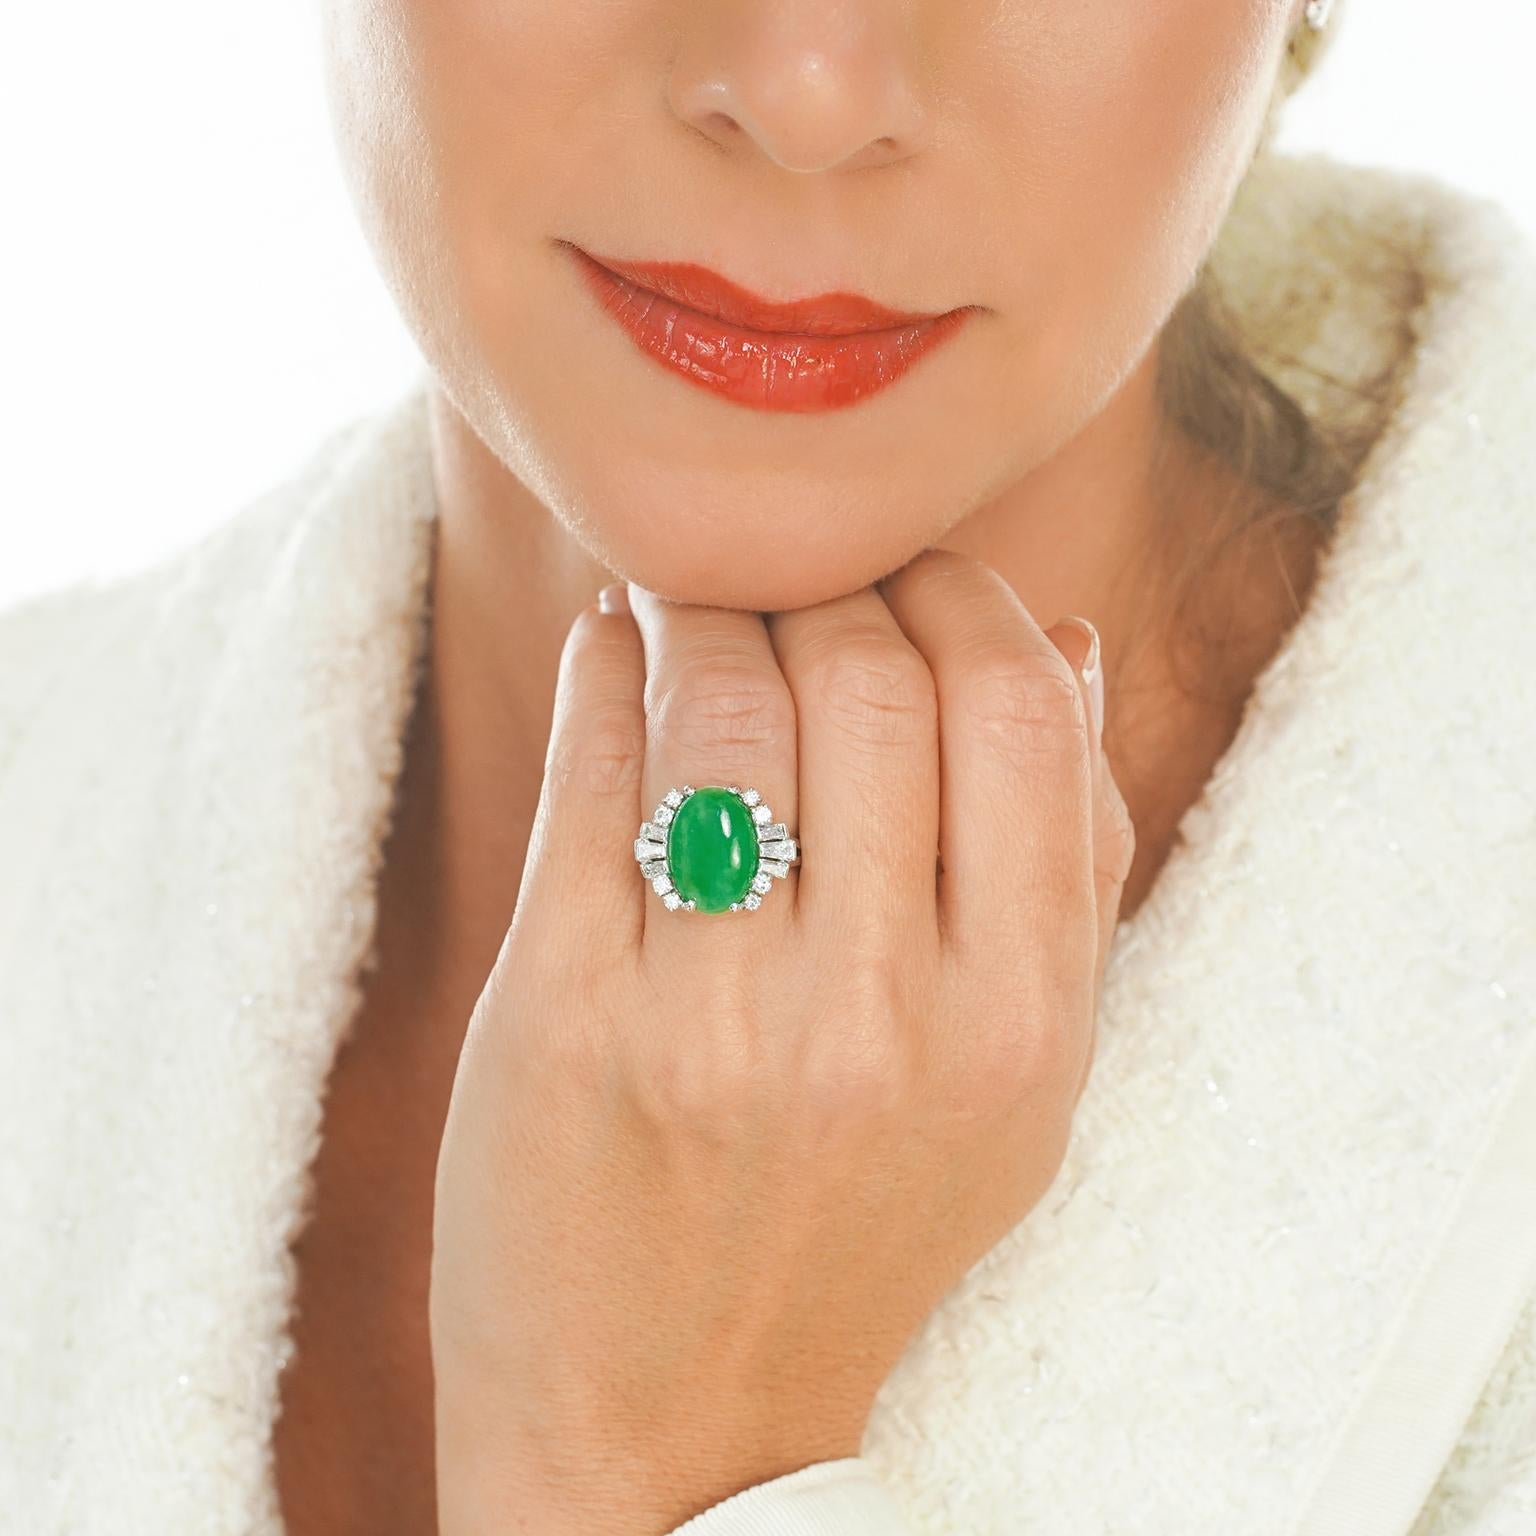 Circa 1950s, Platinum, by F&F Felger, Newark, NJ, American. Cette sublime bague en platine des années 50 présente des diamants blancs brillants (couleur G, pureté VS) entourant un superbe cabochon de jade vert naturel. N'utilisant que les meilleurs